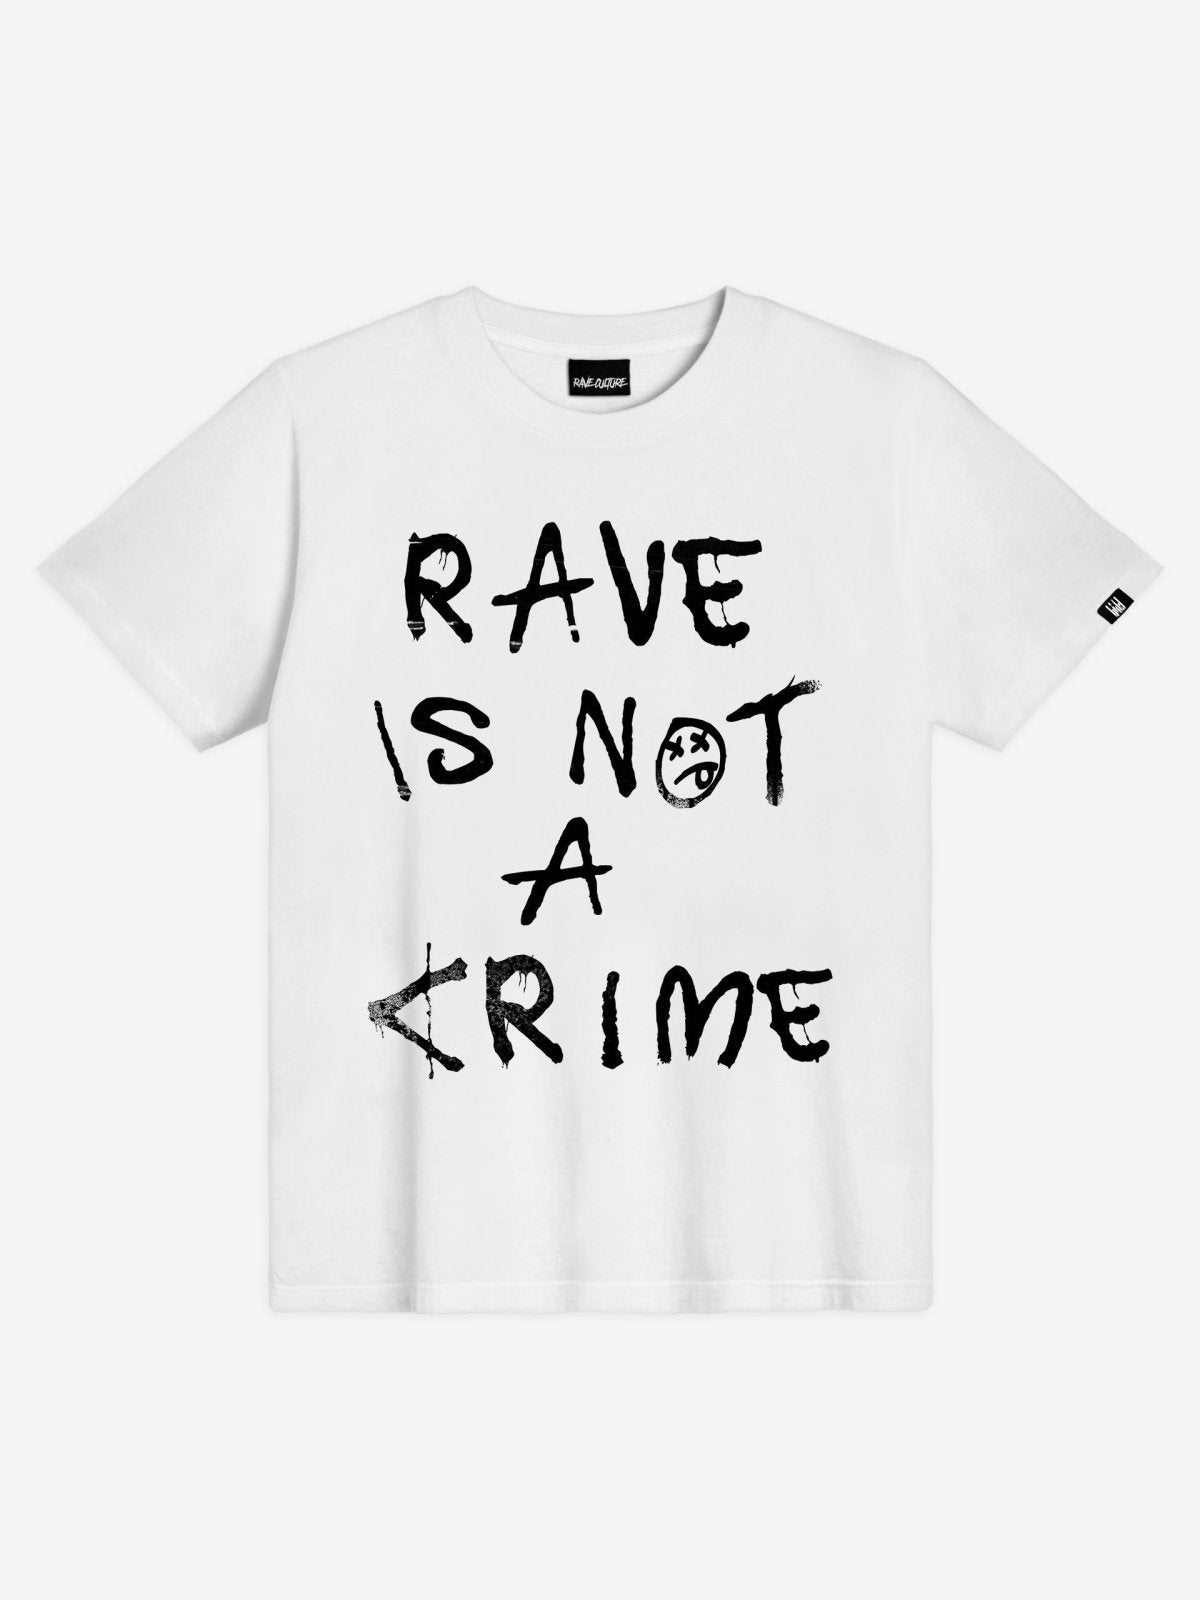 Rave Is Not A Crime T-Shirt - Rave Culture Shop